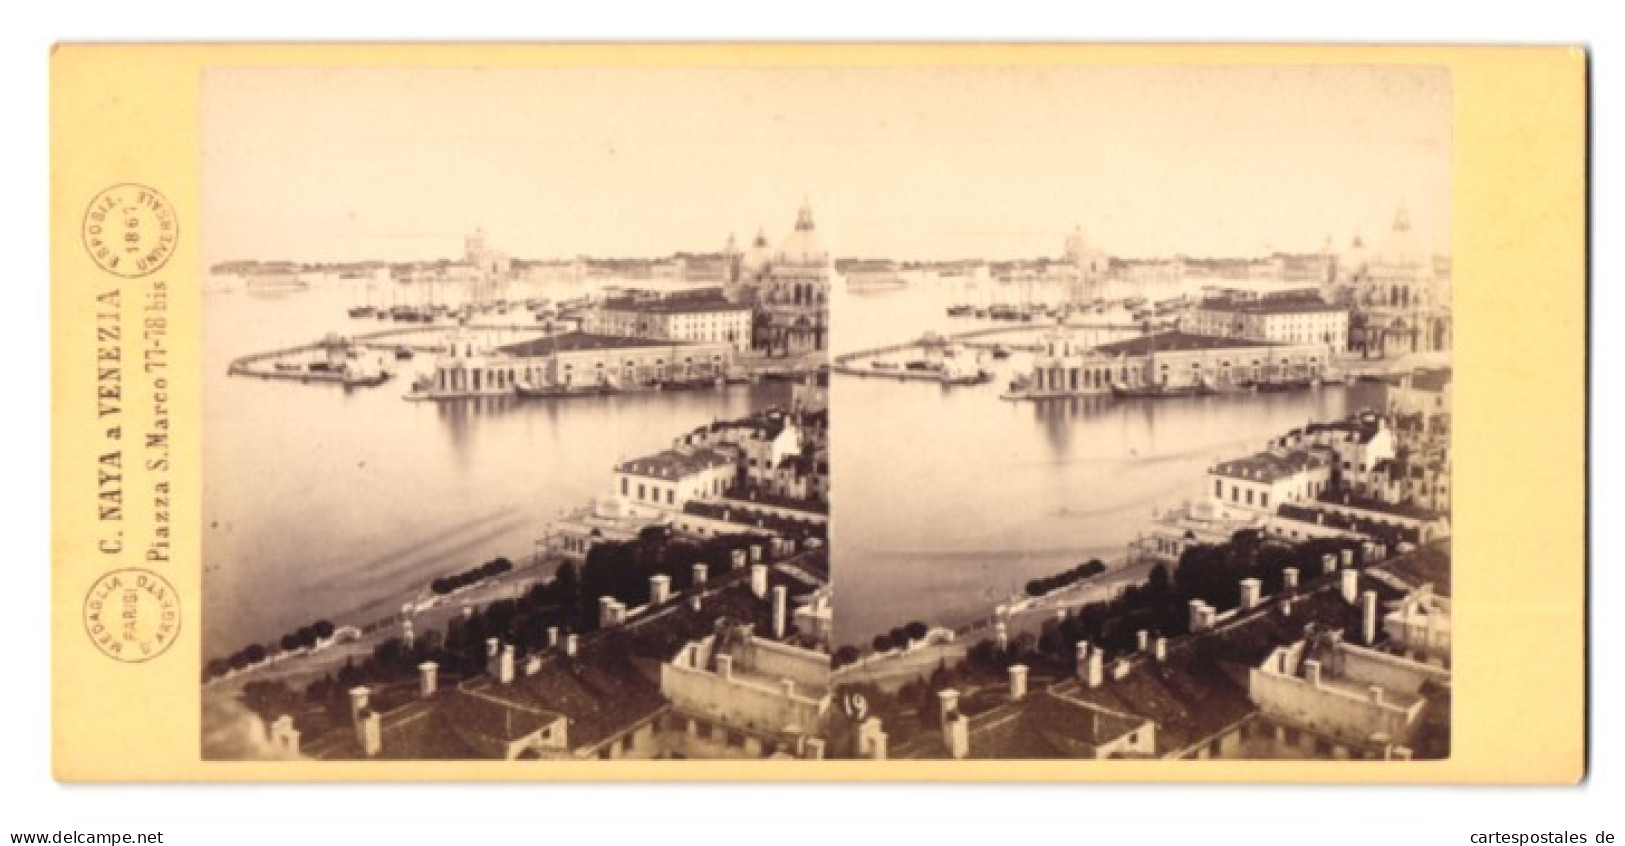 Stereo-Foto C. Naya, Venezia, Ansicht Venedig, Panorama Dogana Di Mare, 1869  - Stereoscoop